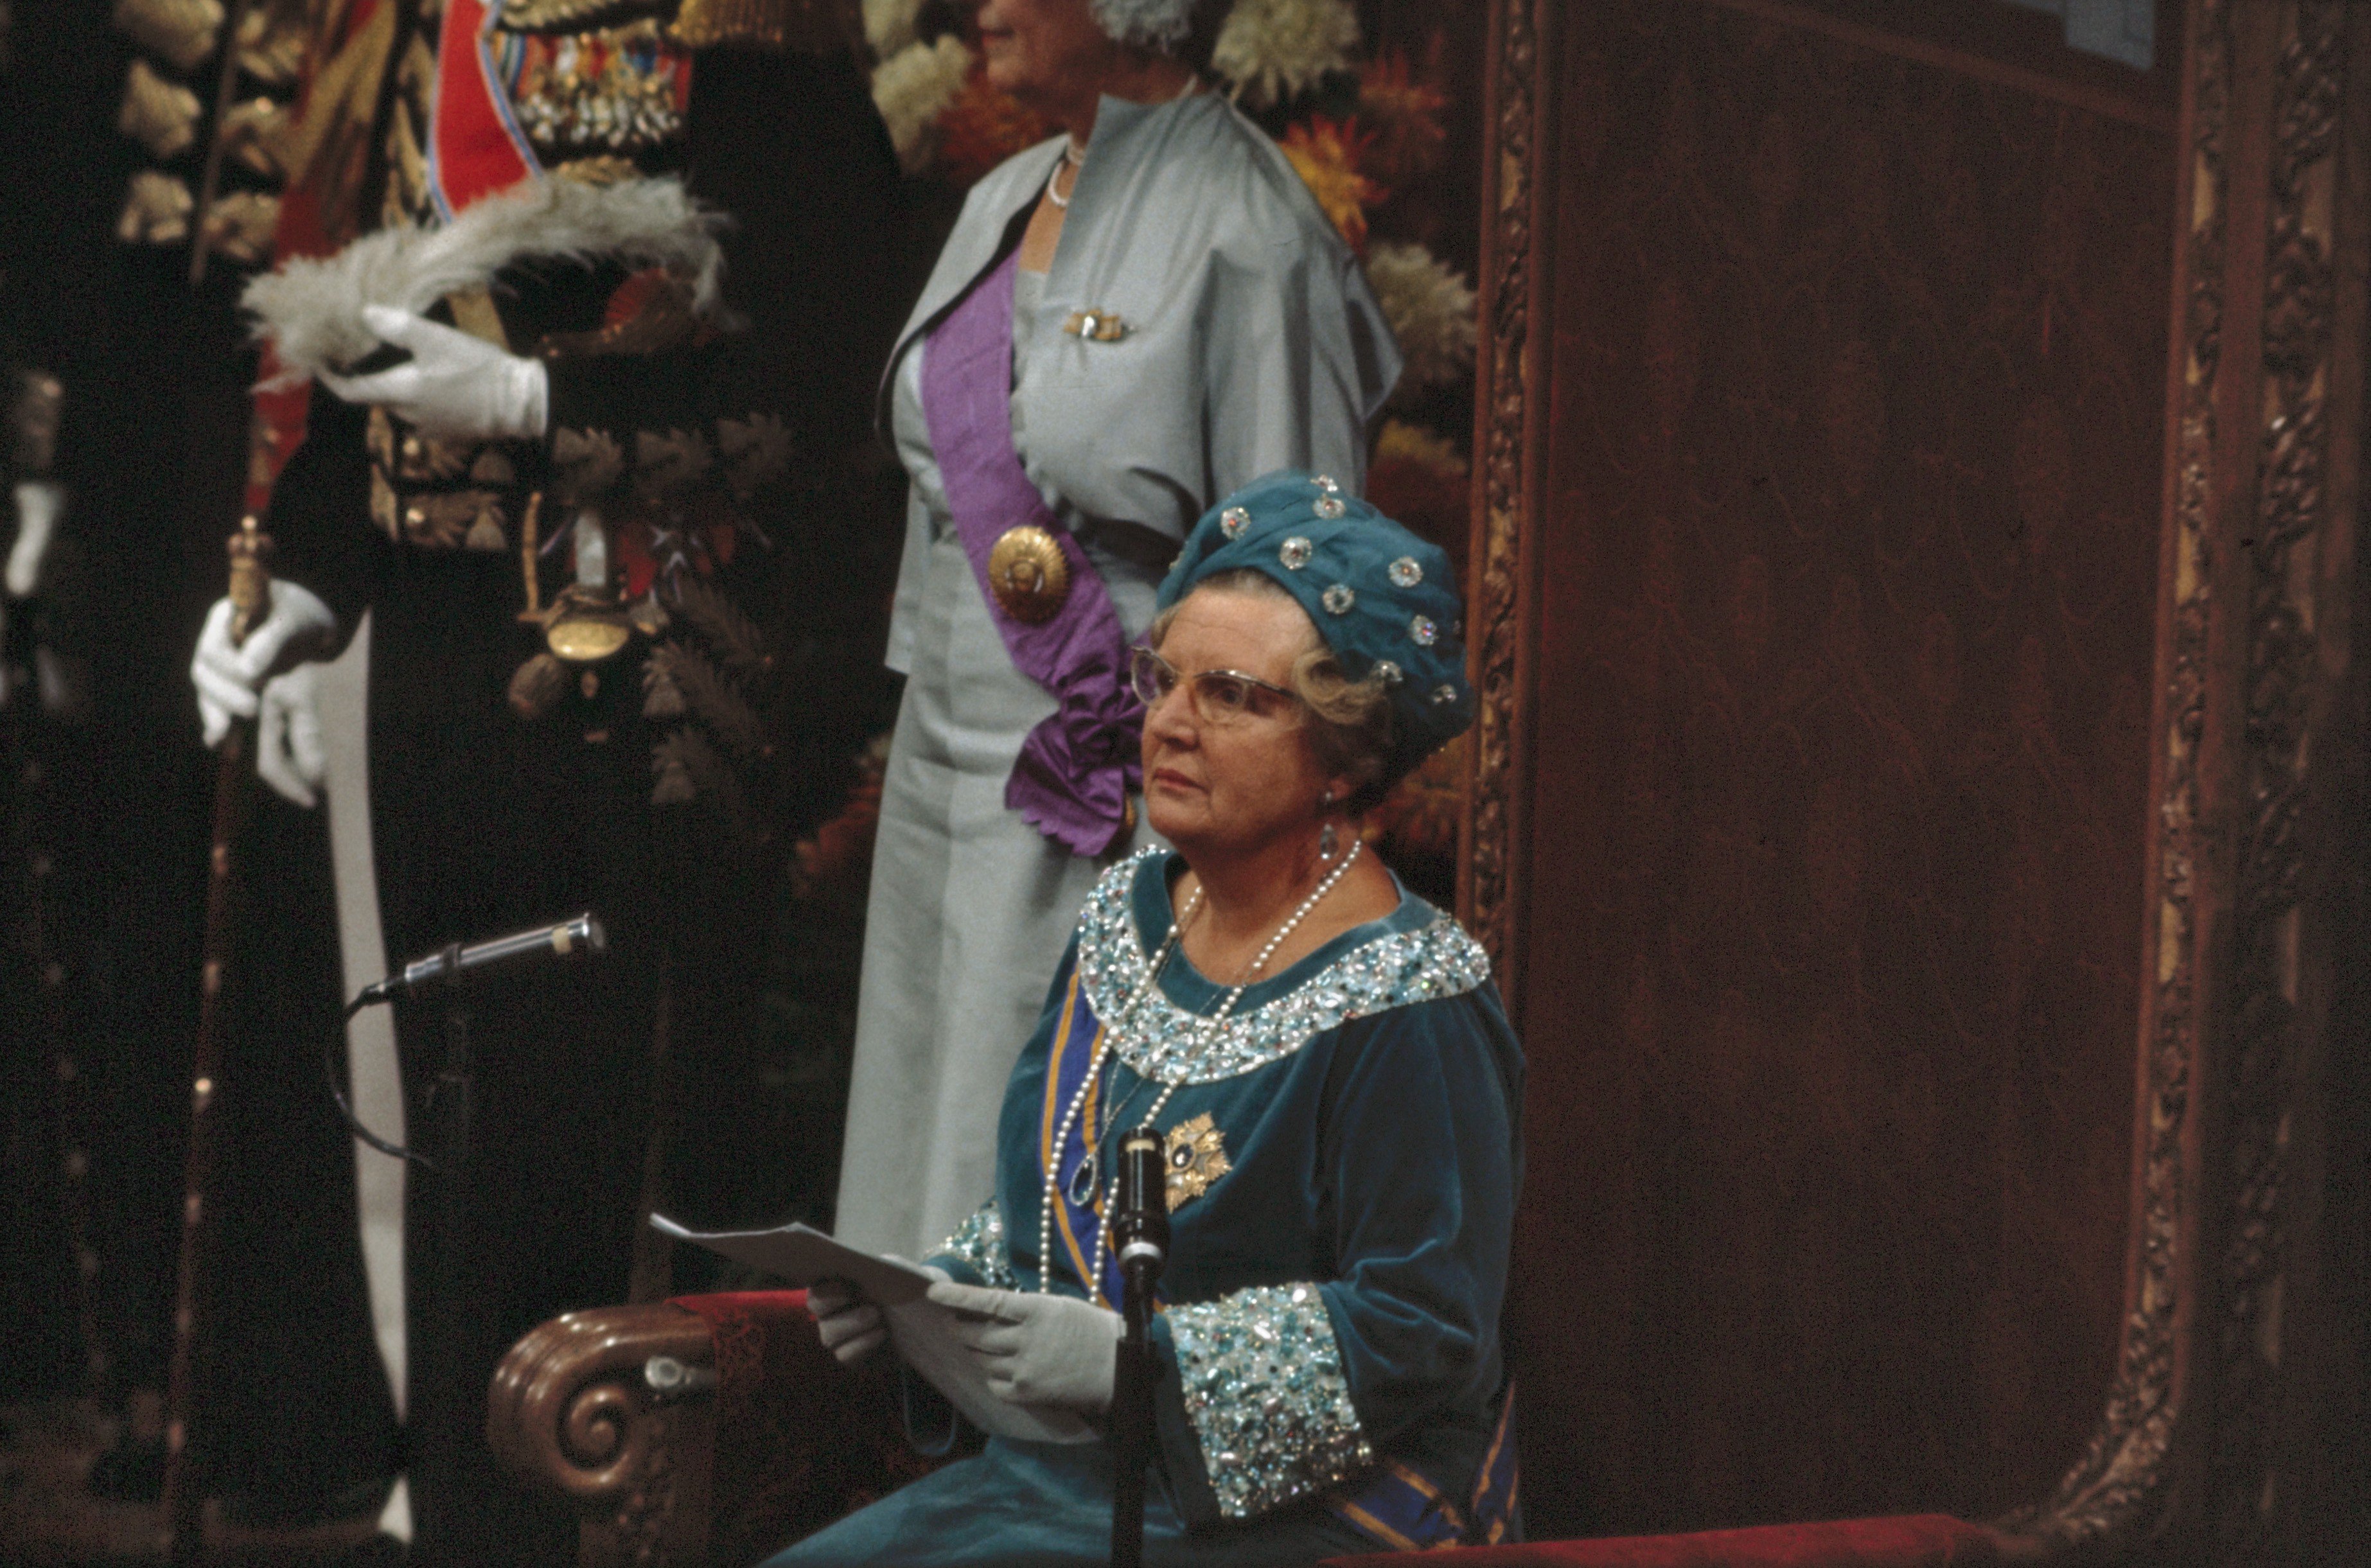 Afb. 1: Koningin Juliana leest de troonrede voor, Prinsjesdag 1968. Foto: Ron Kroon, Nationaal Archief. | Paleis Het Loo, Prinsjesdag, Hoedendag, Ascot, 1968, Koningin Juliana, troonrede, Beatrix, japon